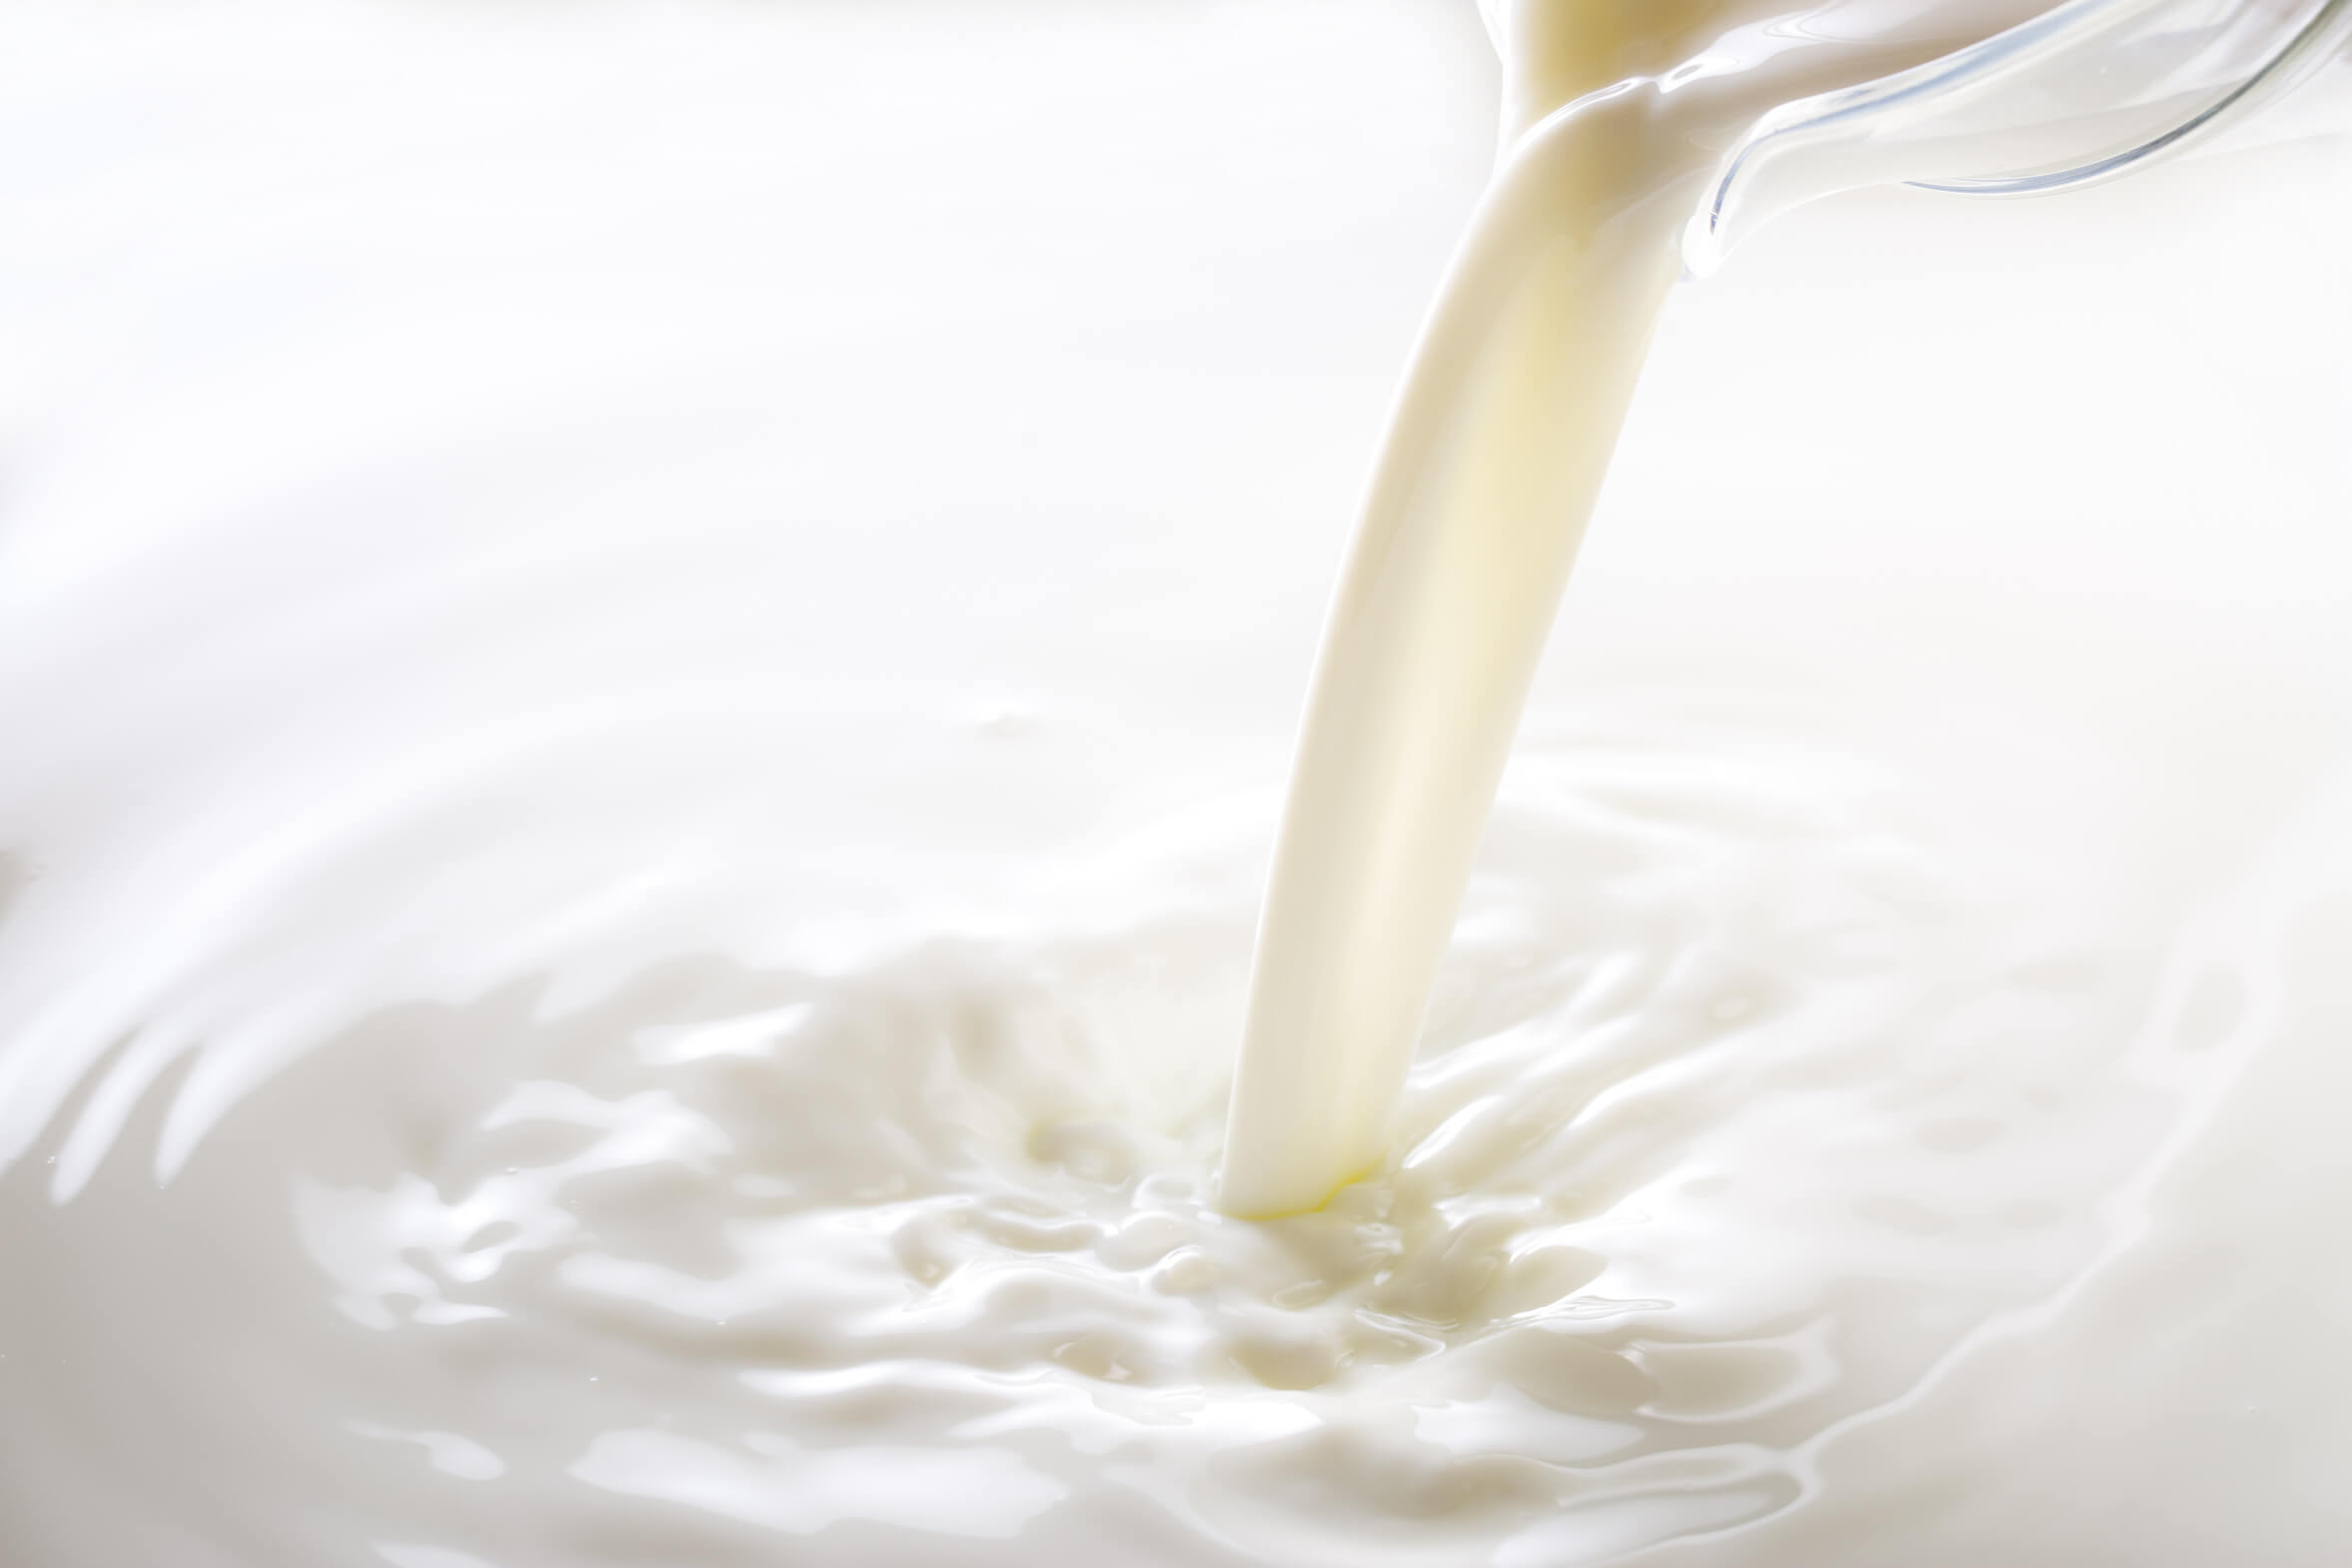 مضرات مصرف زیاد شیر ، بهترین شیر ، مضرات شیر